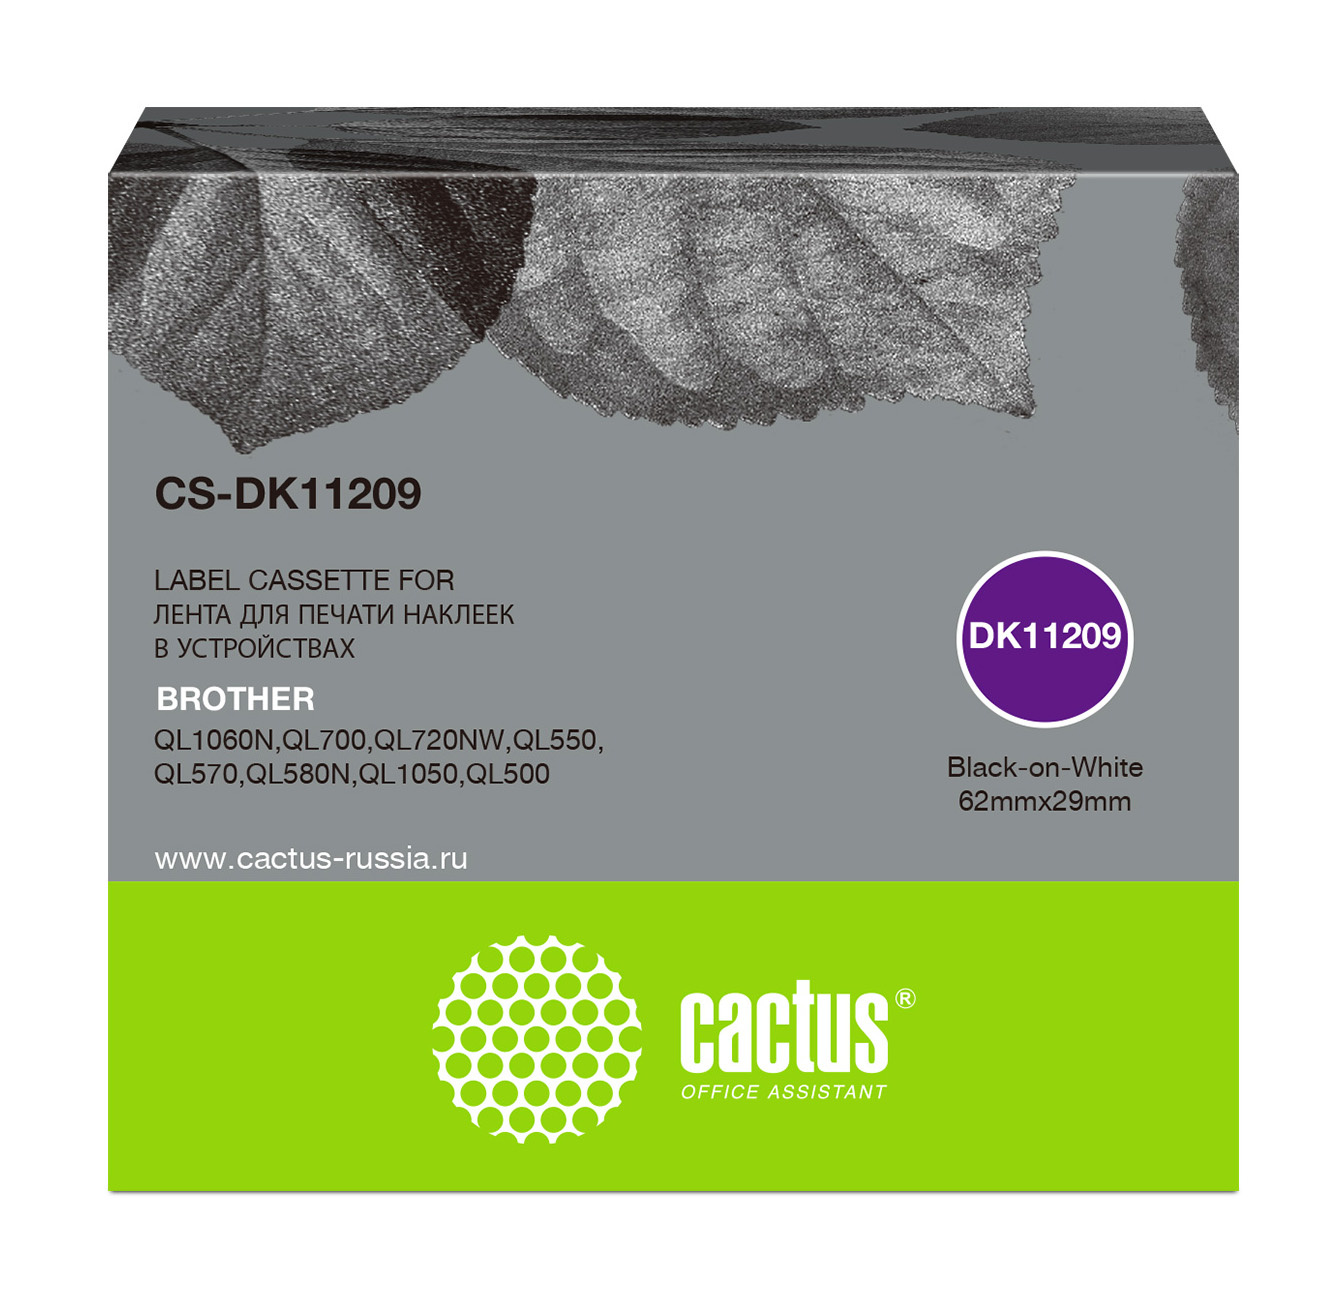 Кассета с наклейками Cactus CS-DK11209, 6.2 см x 29 см, черный на белом, совместимая